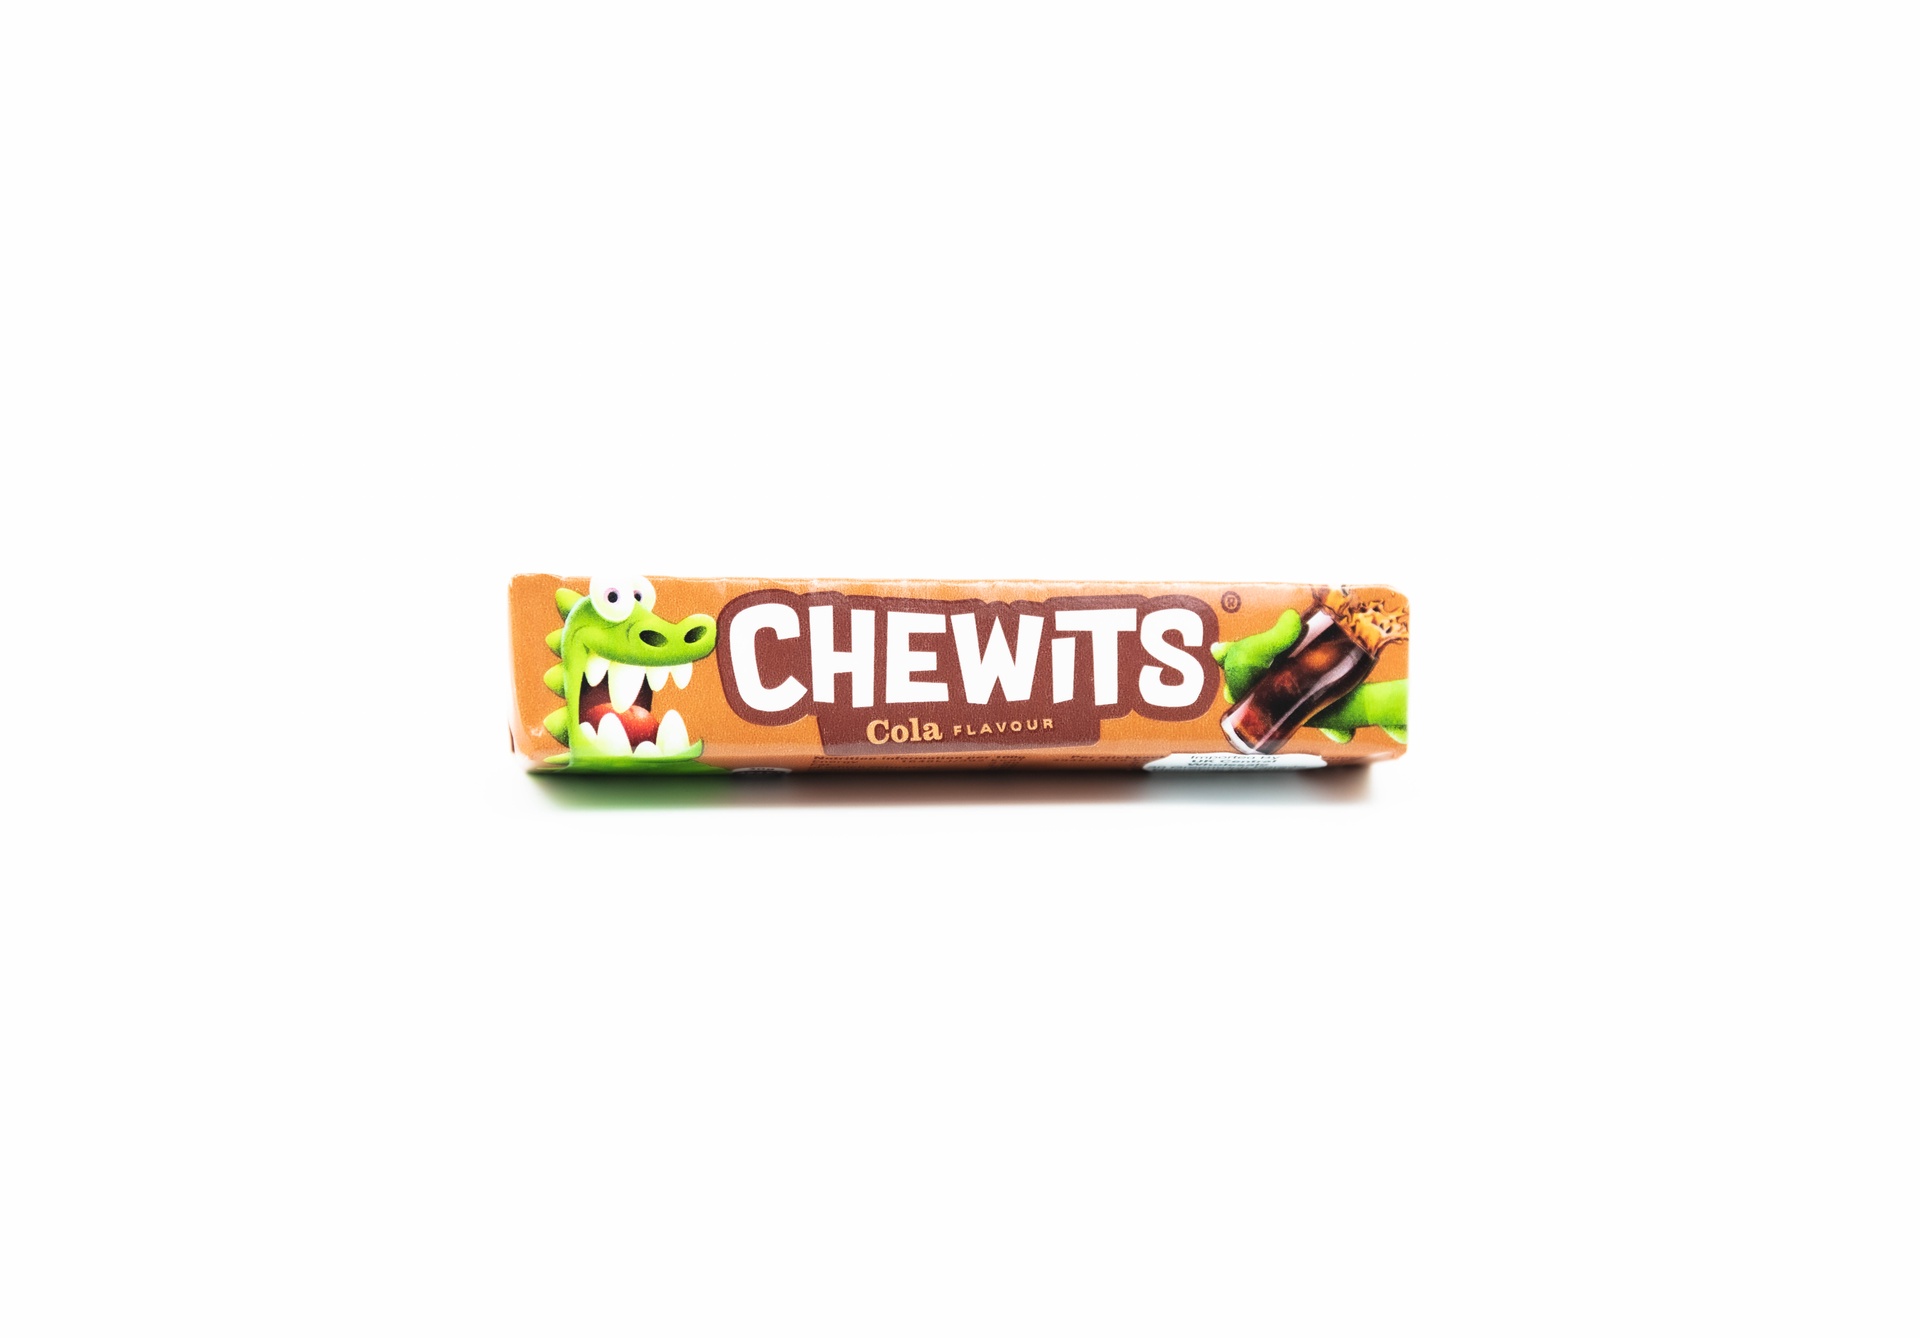 Chewits Cola - Best Of British